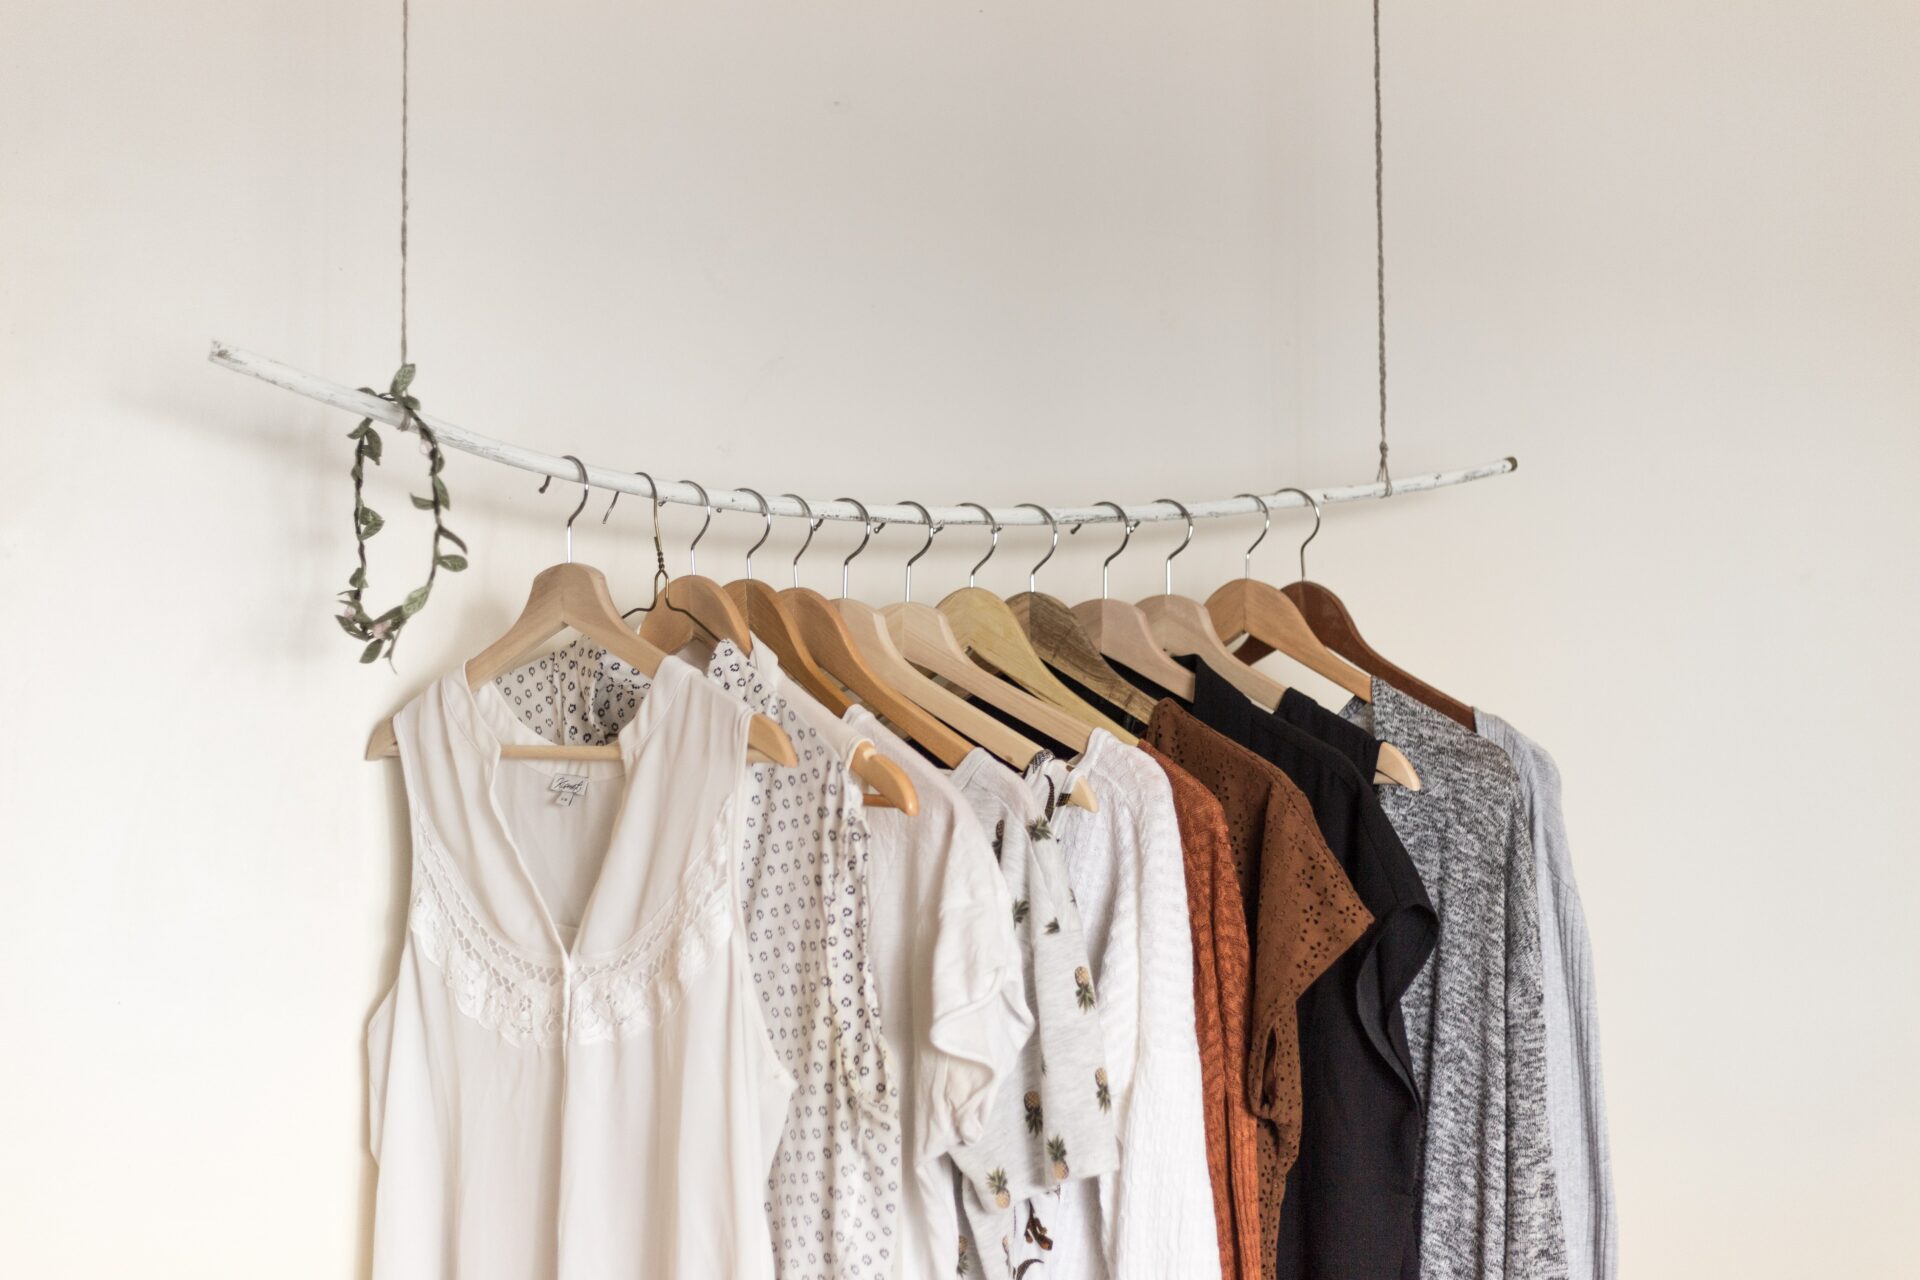 Nicht jeden Trend mitmachen, sondern lieber gut überlegt einkaufen und damit die Garderobe im Kleiderschrank auch ein Stück weit nachhaltig machen. Das ist innovativ und außerdem preiswert. Bildquelle: © Priscilla du Preez / Unsplash.com